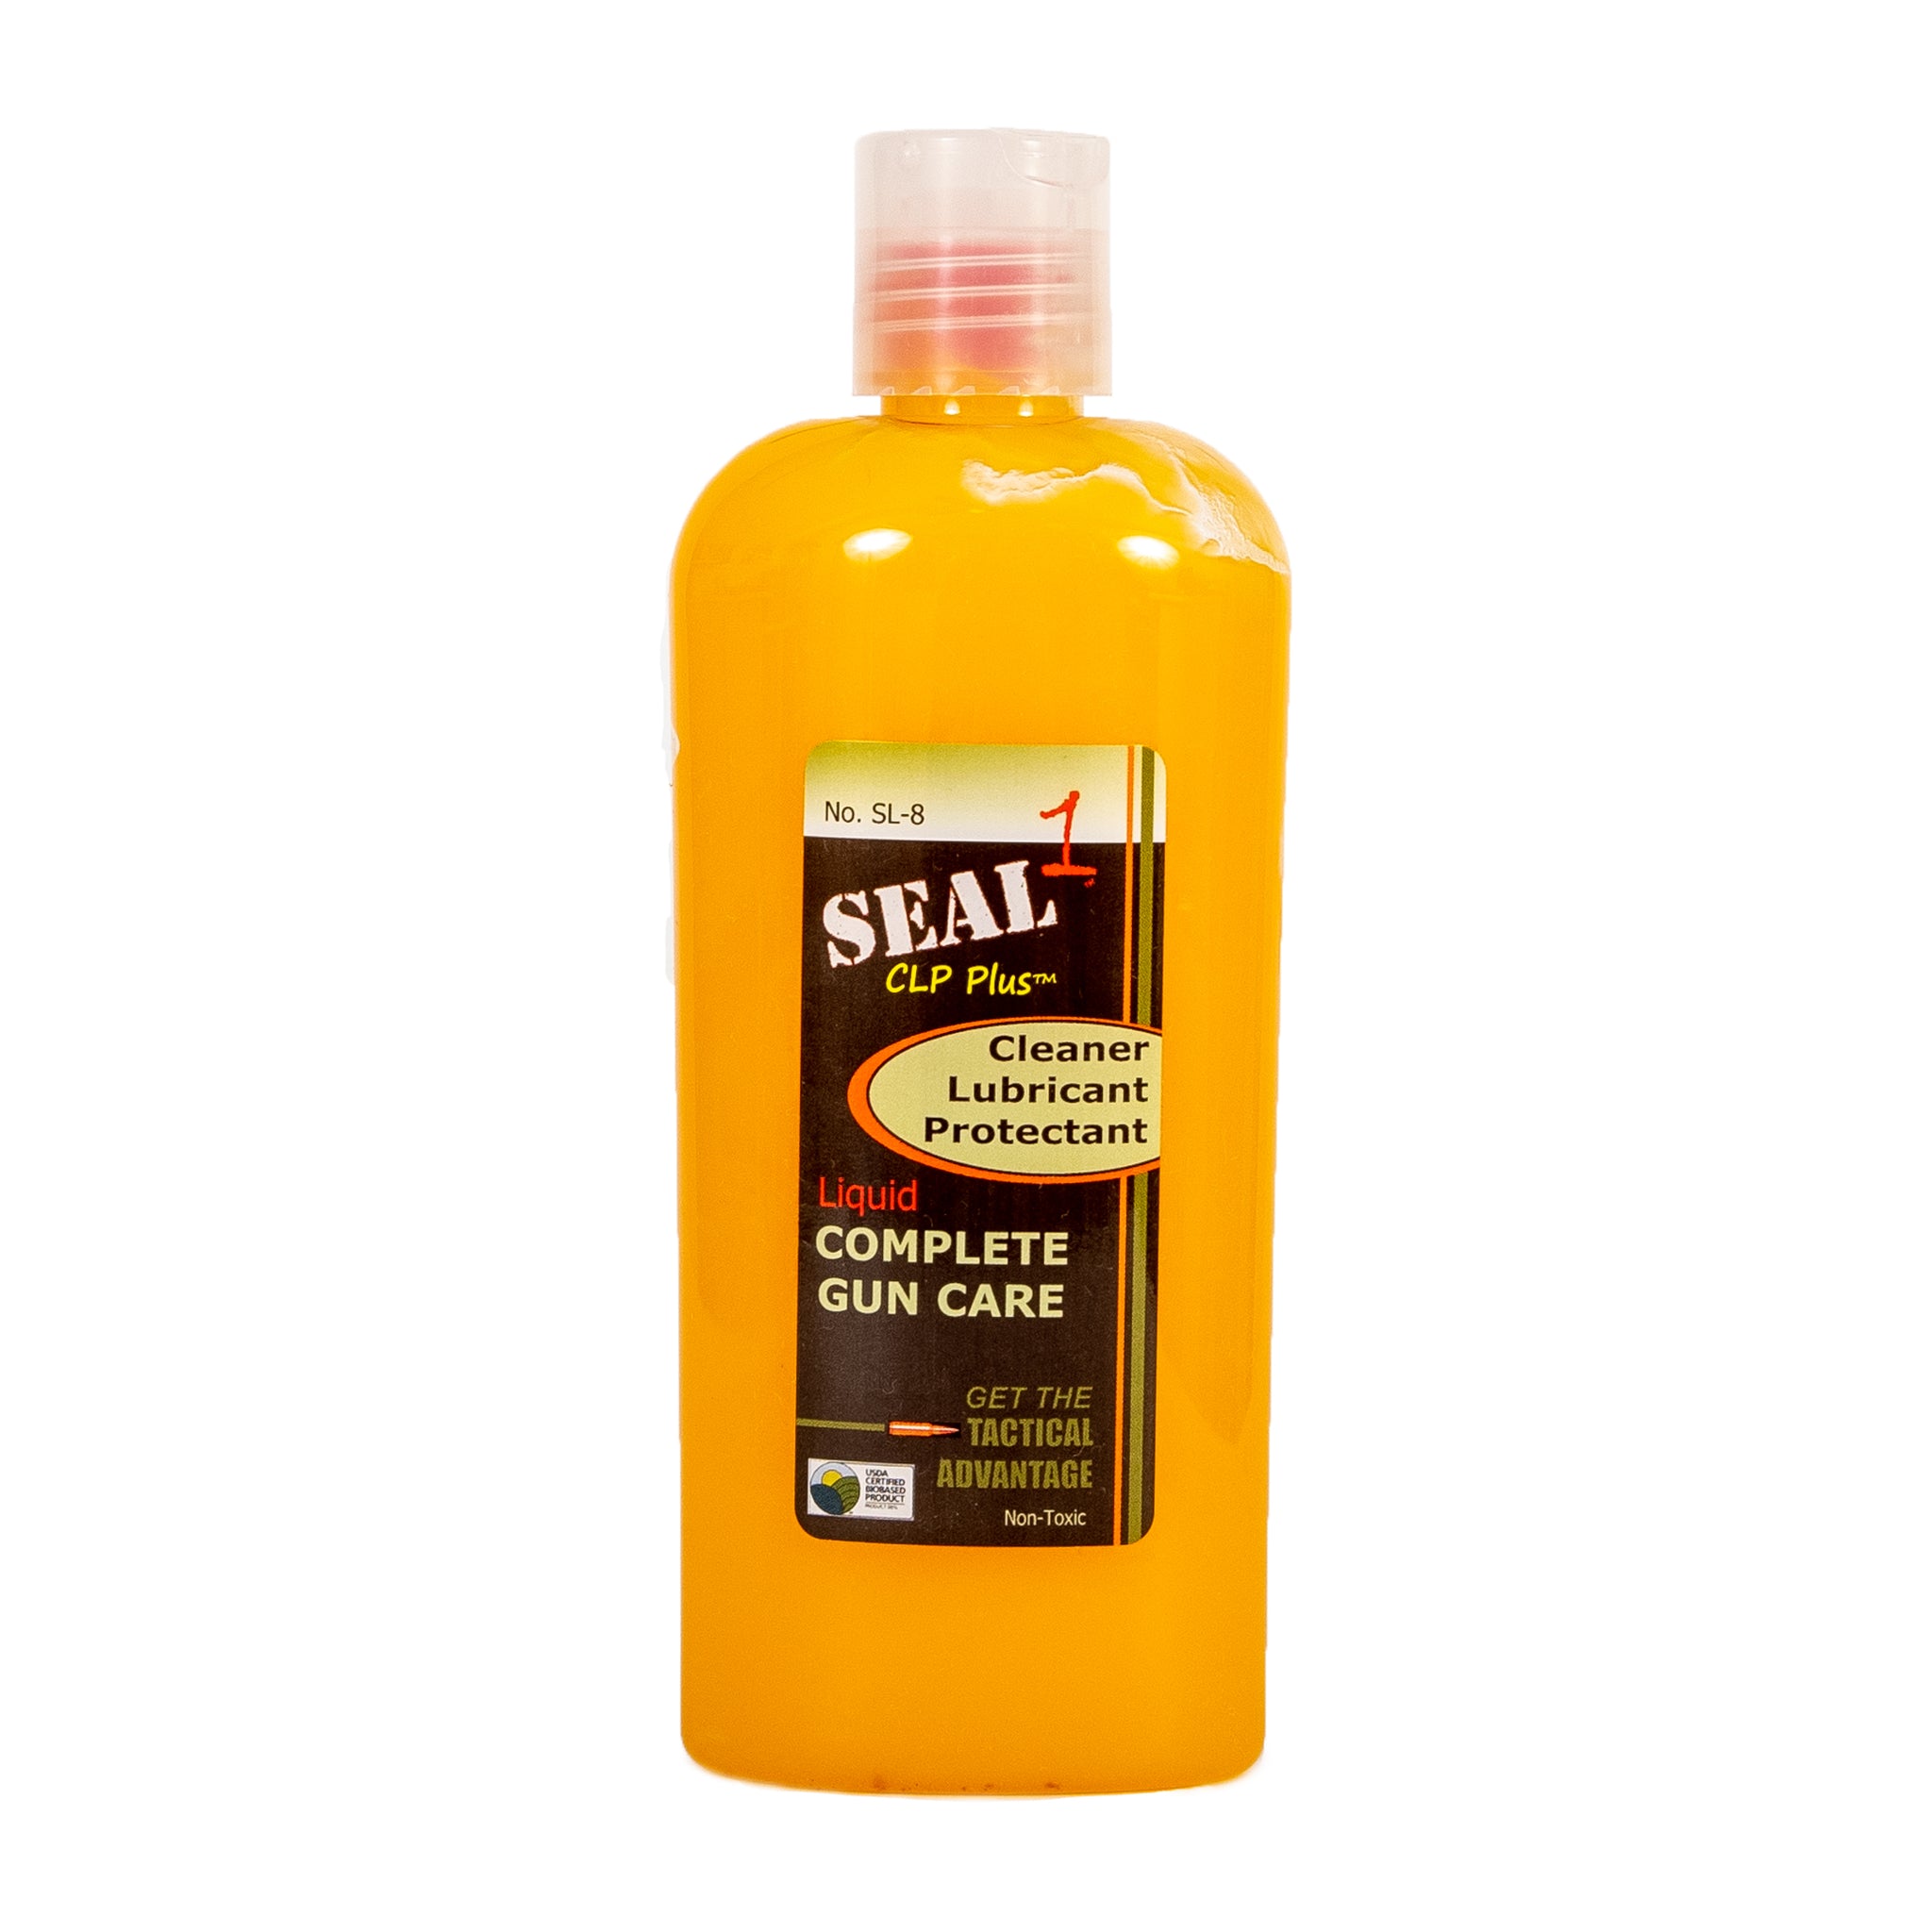 SEAL 1 CLP PLUS 8 oz. Liquid